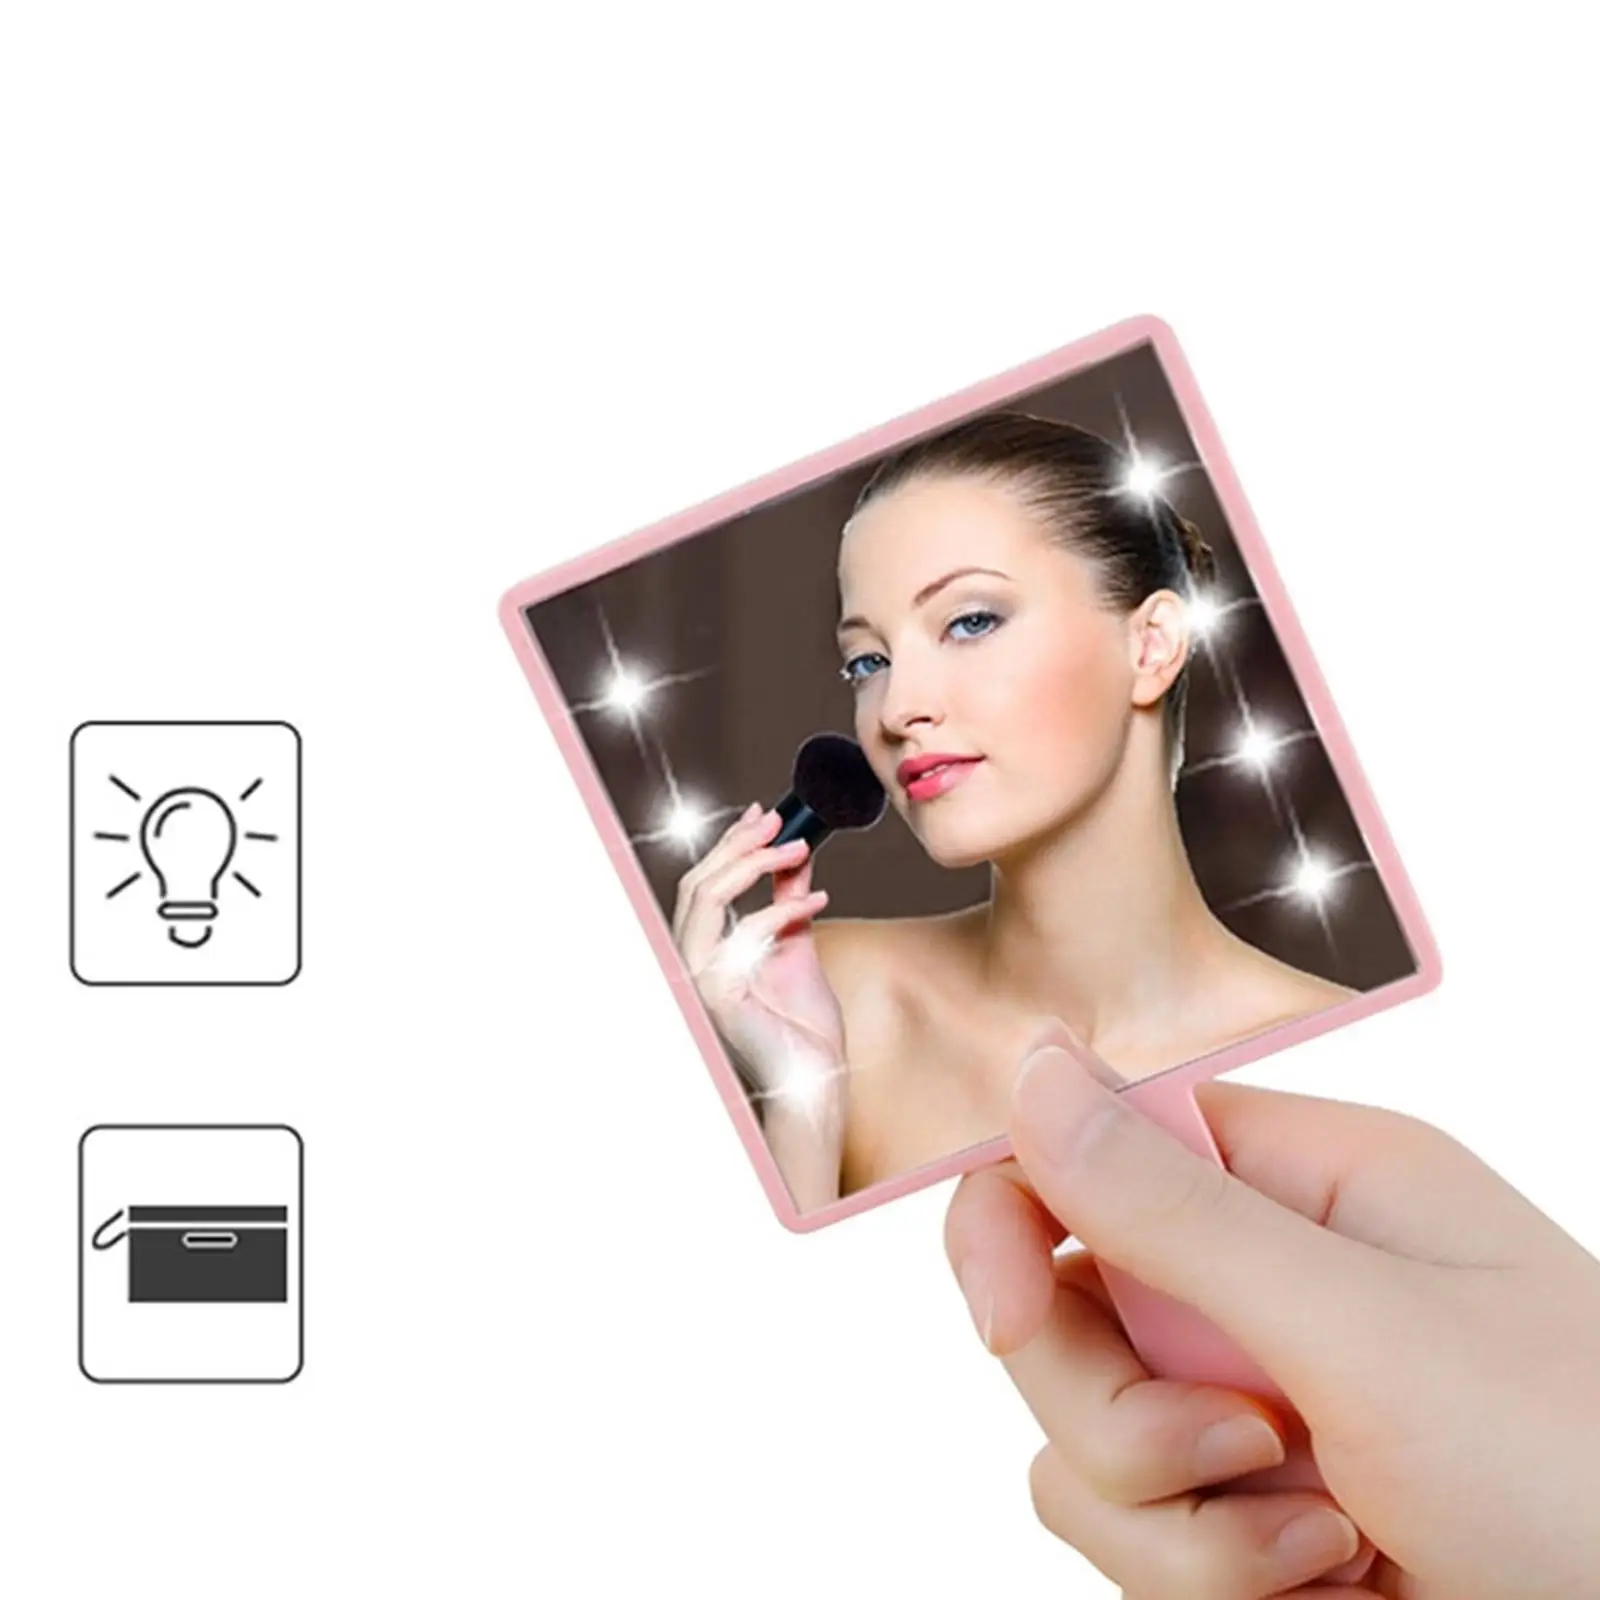 Makeup  Light Handheld Travel Makeup  Vanity Mirror for Home